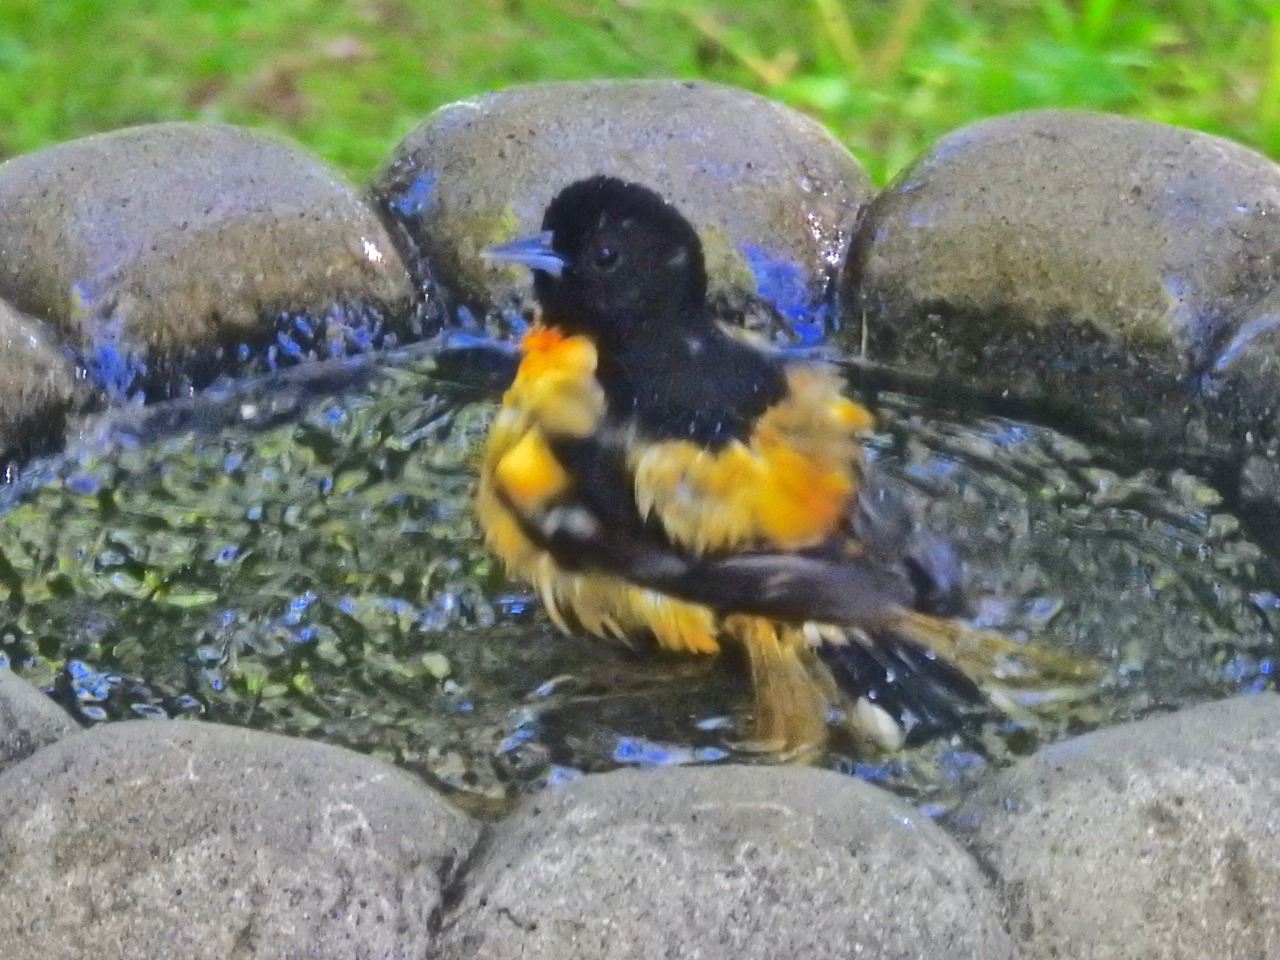 A male Baltimore oriole in a bird bath